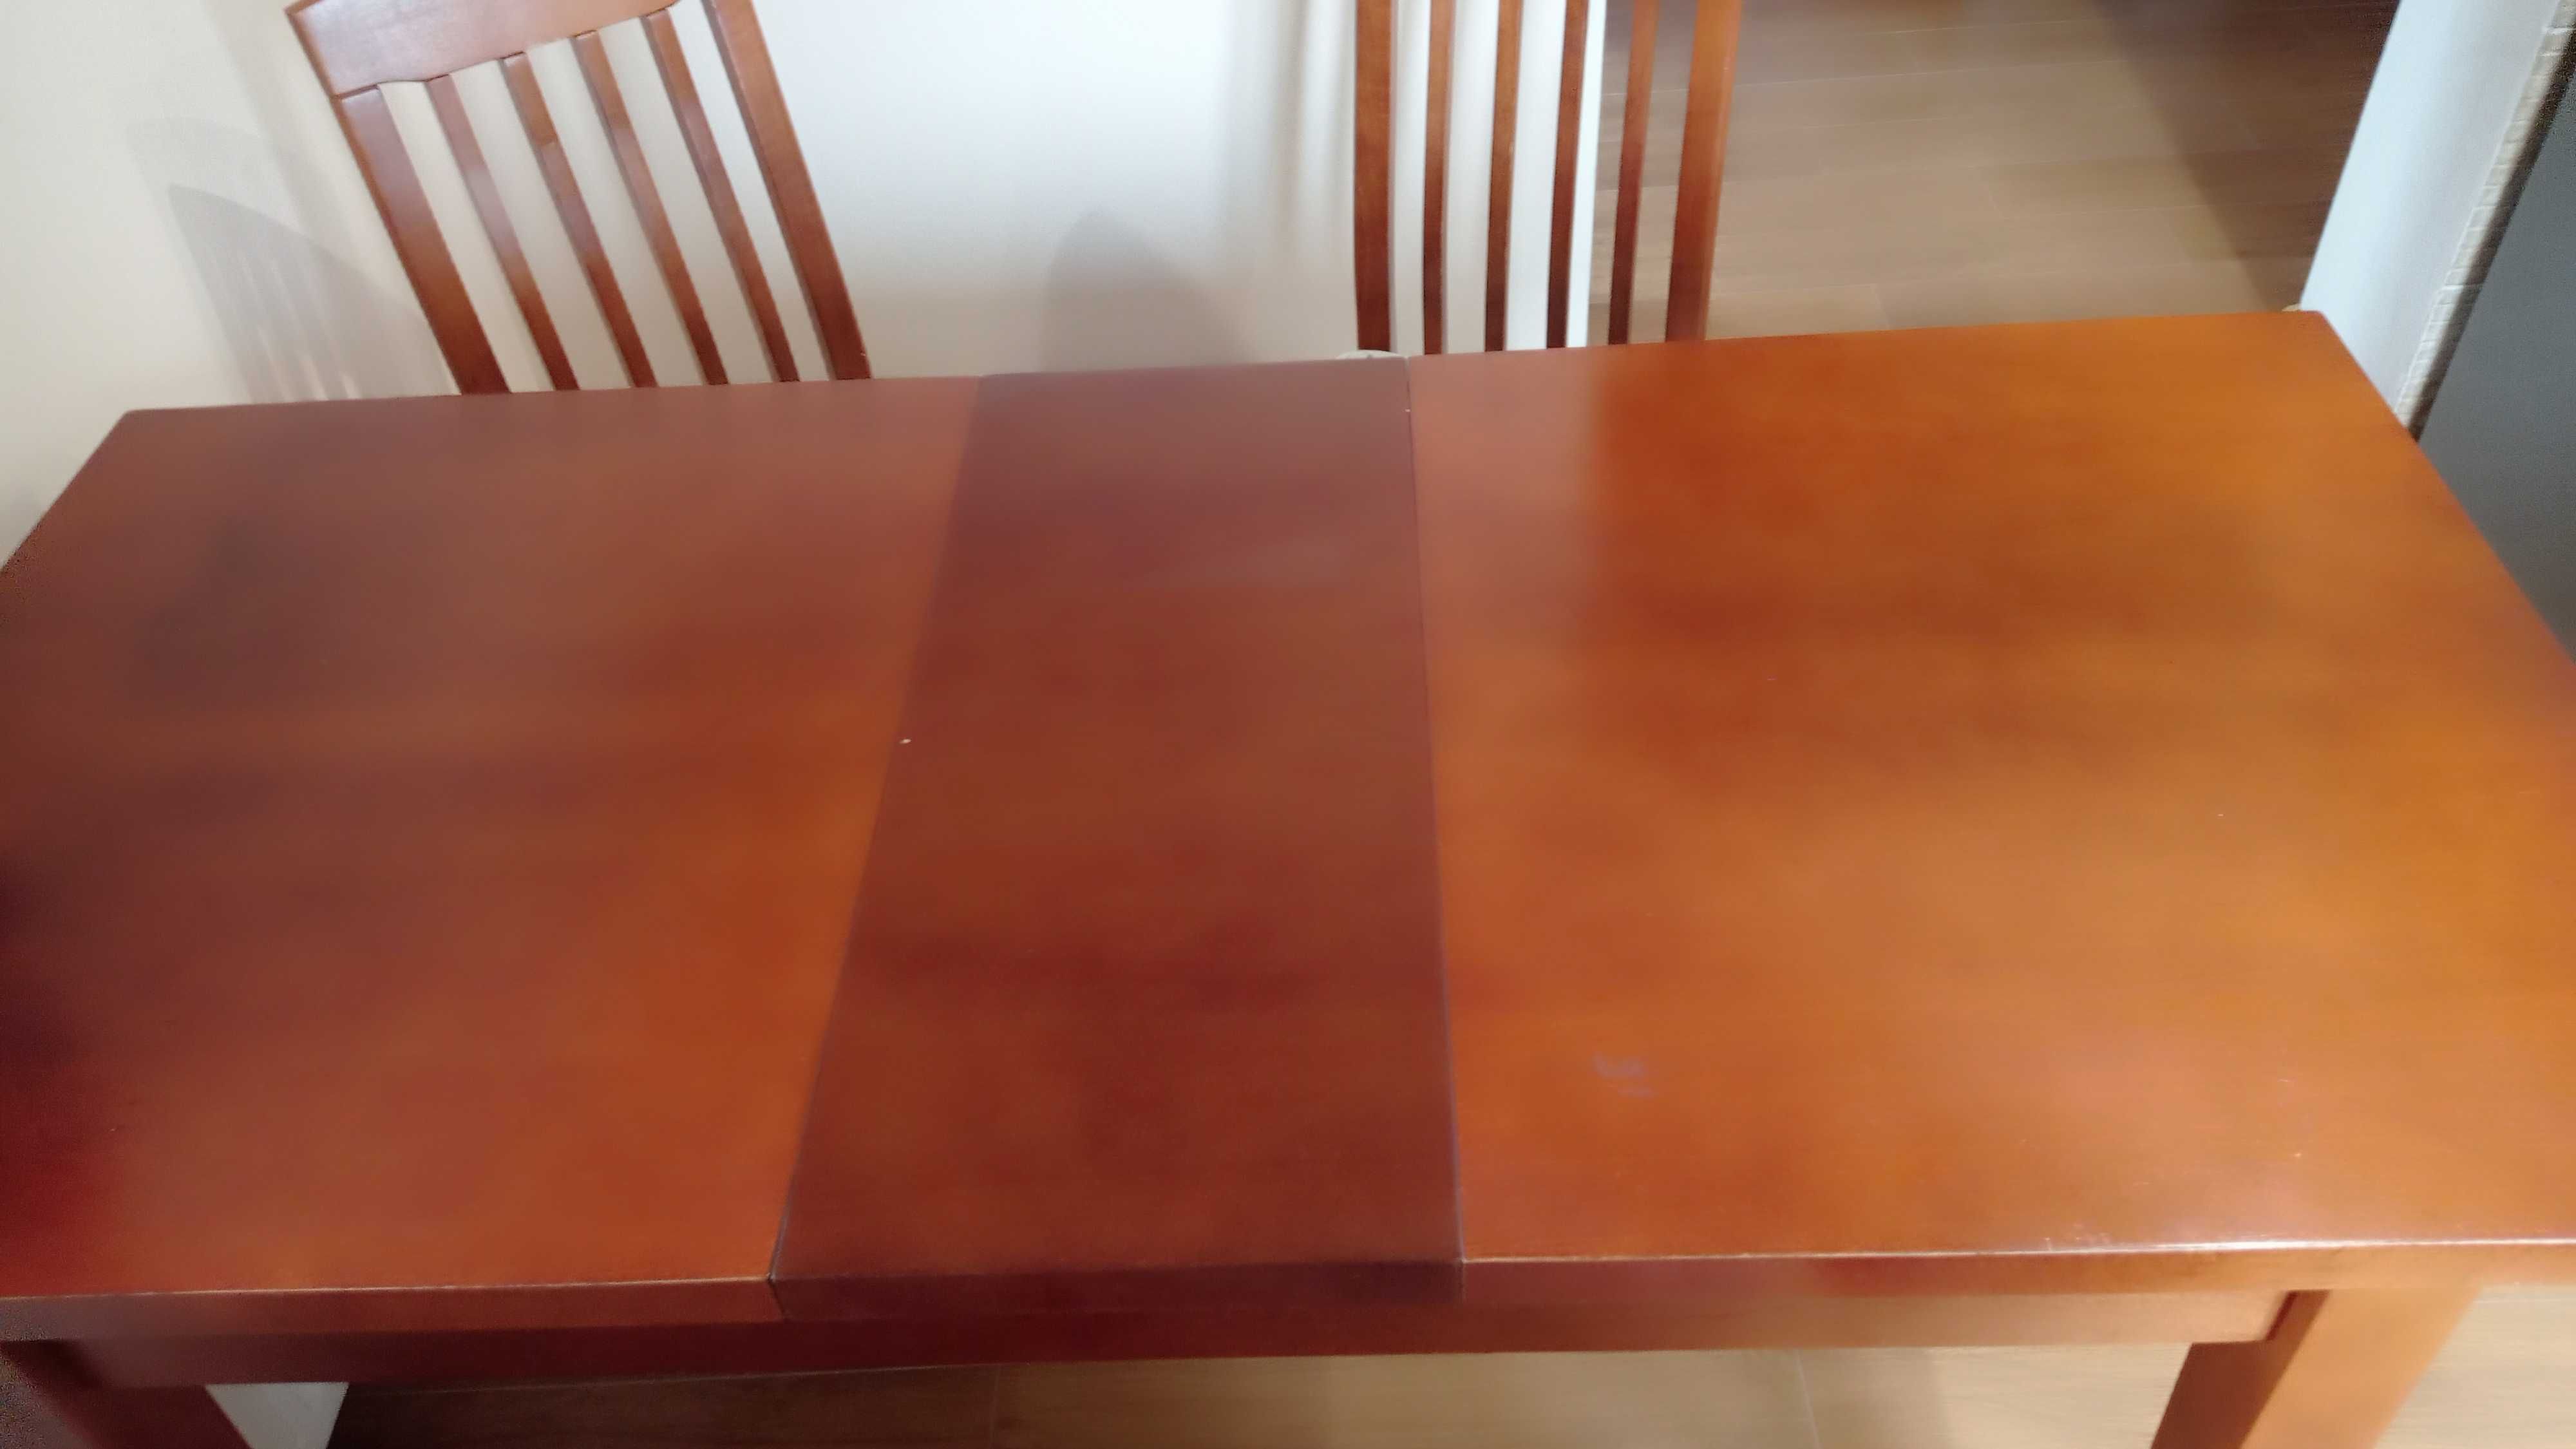 Stół rozkładany z 4 krzesłami